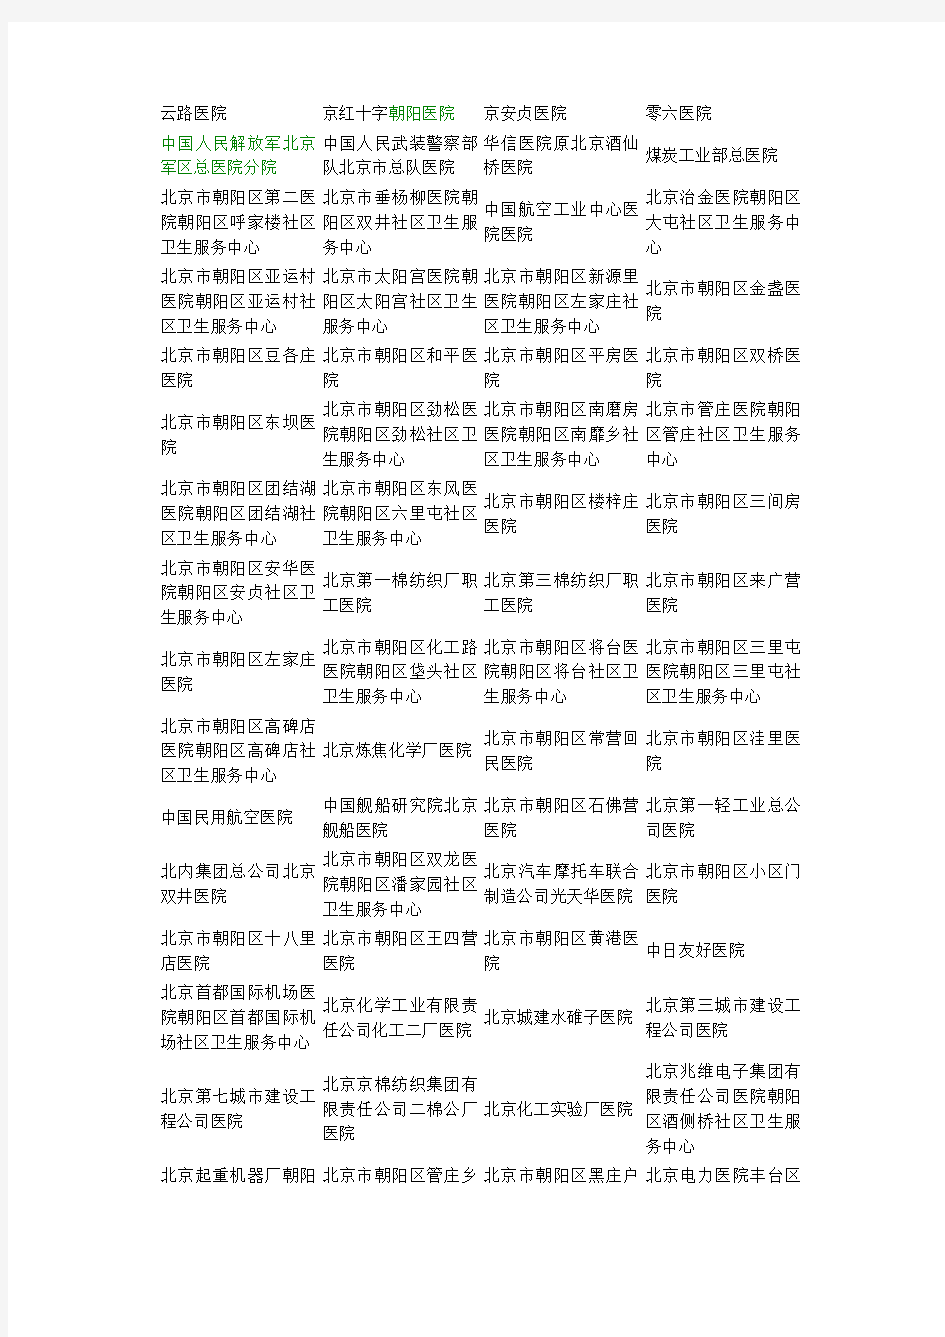 北京市基本医疗保险定点医院名单